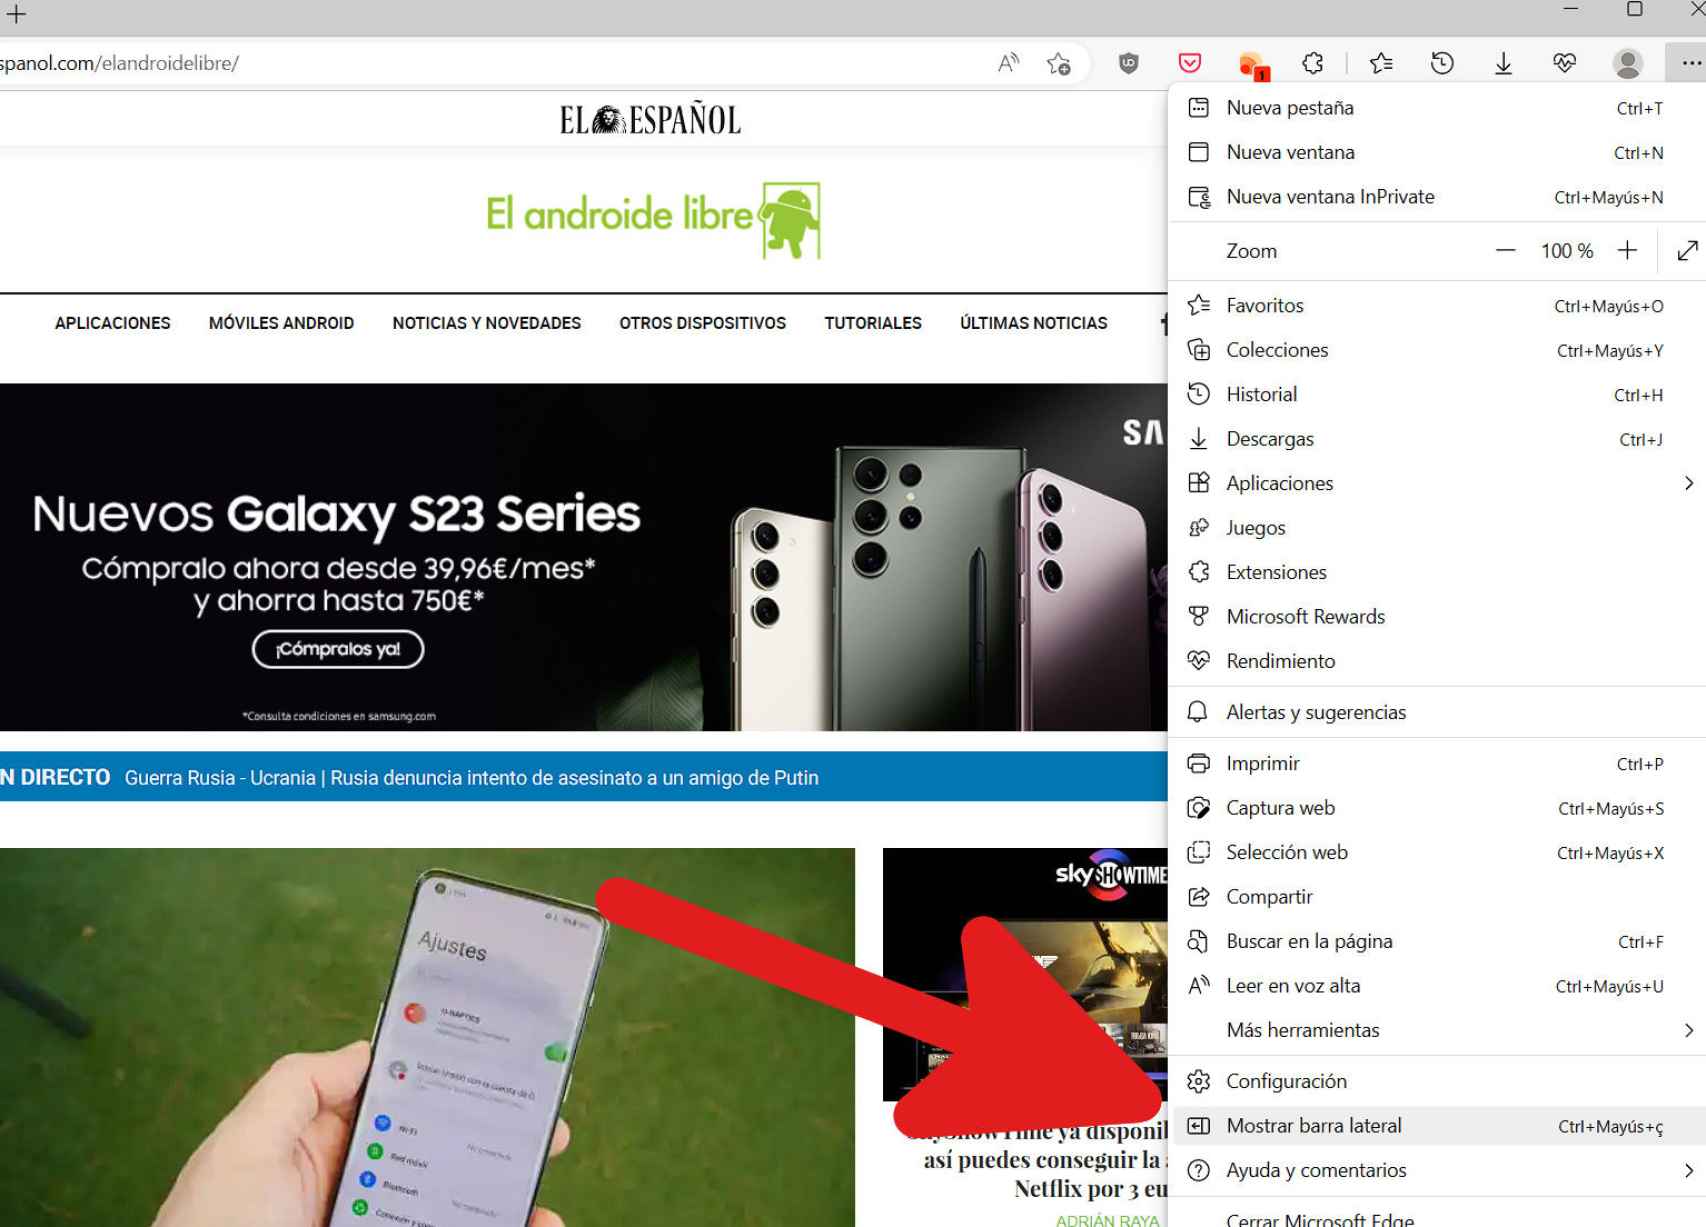 Cómo mostrar la barra lateral de Bing en Edge